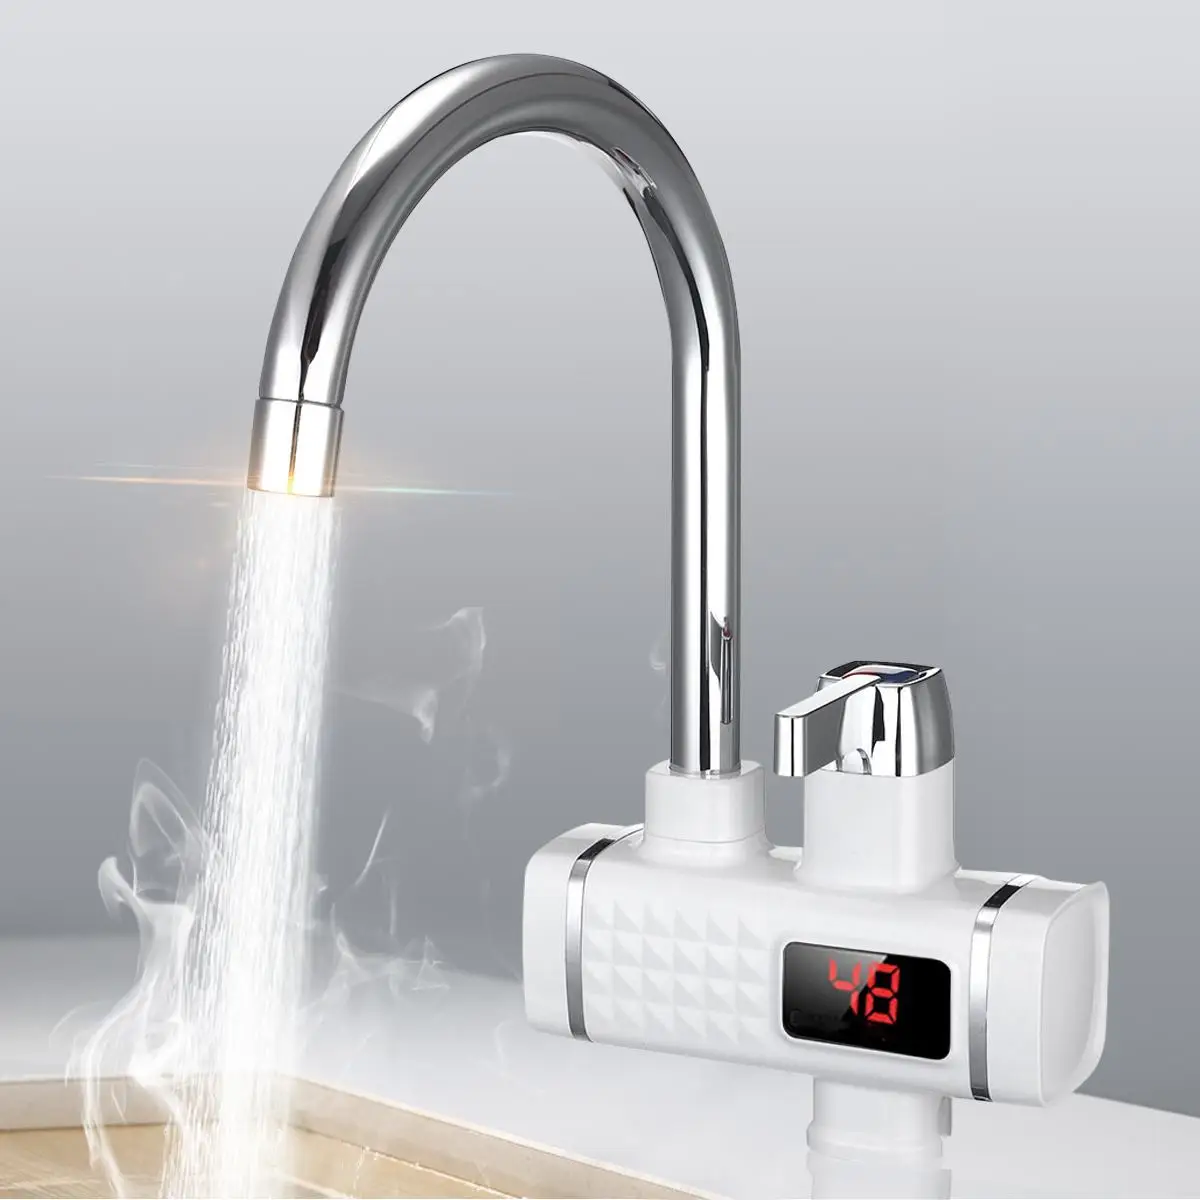 220 В 3000 Вт Электрический кран горячей воды нагреватель мгновенный цифровой дисплей для дома, ванны, кухни горячей воды нагреватель